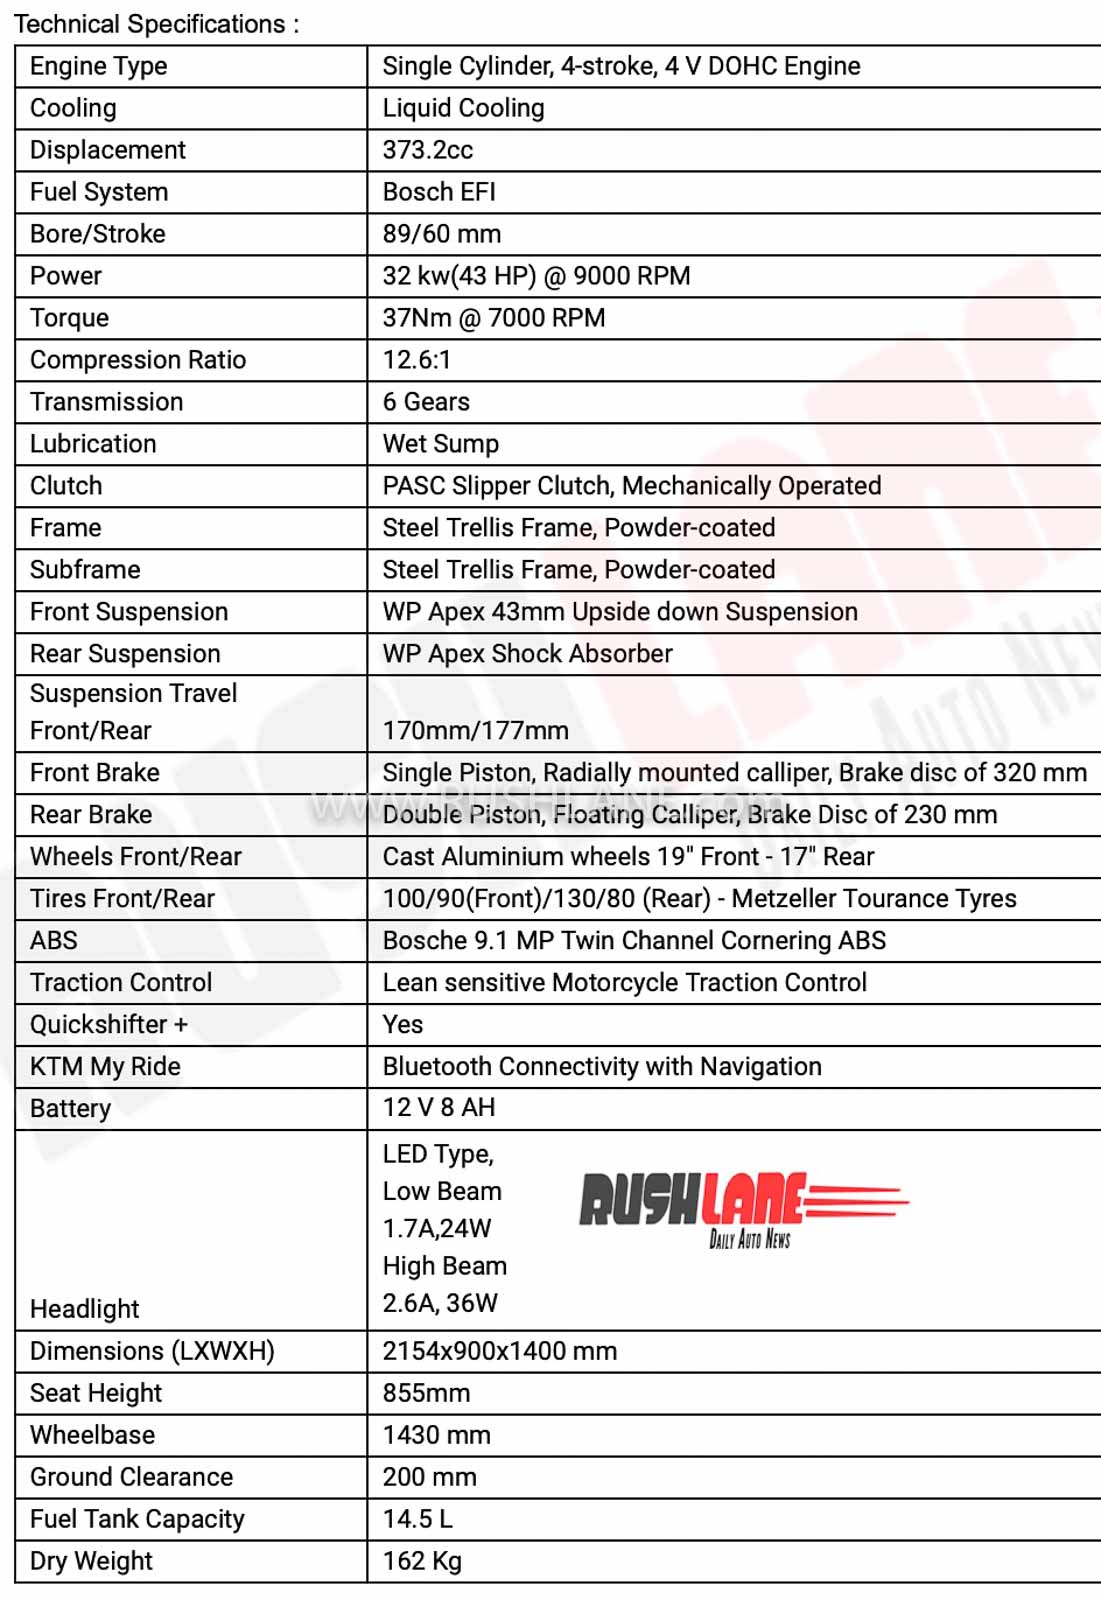 KTM 390 Adventure specs for India